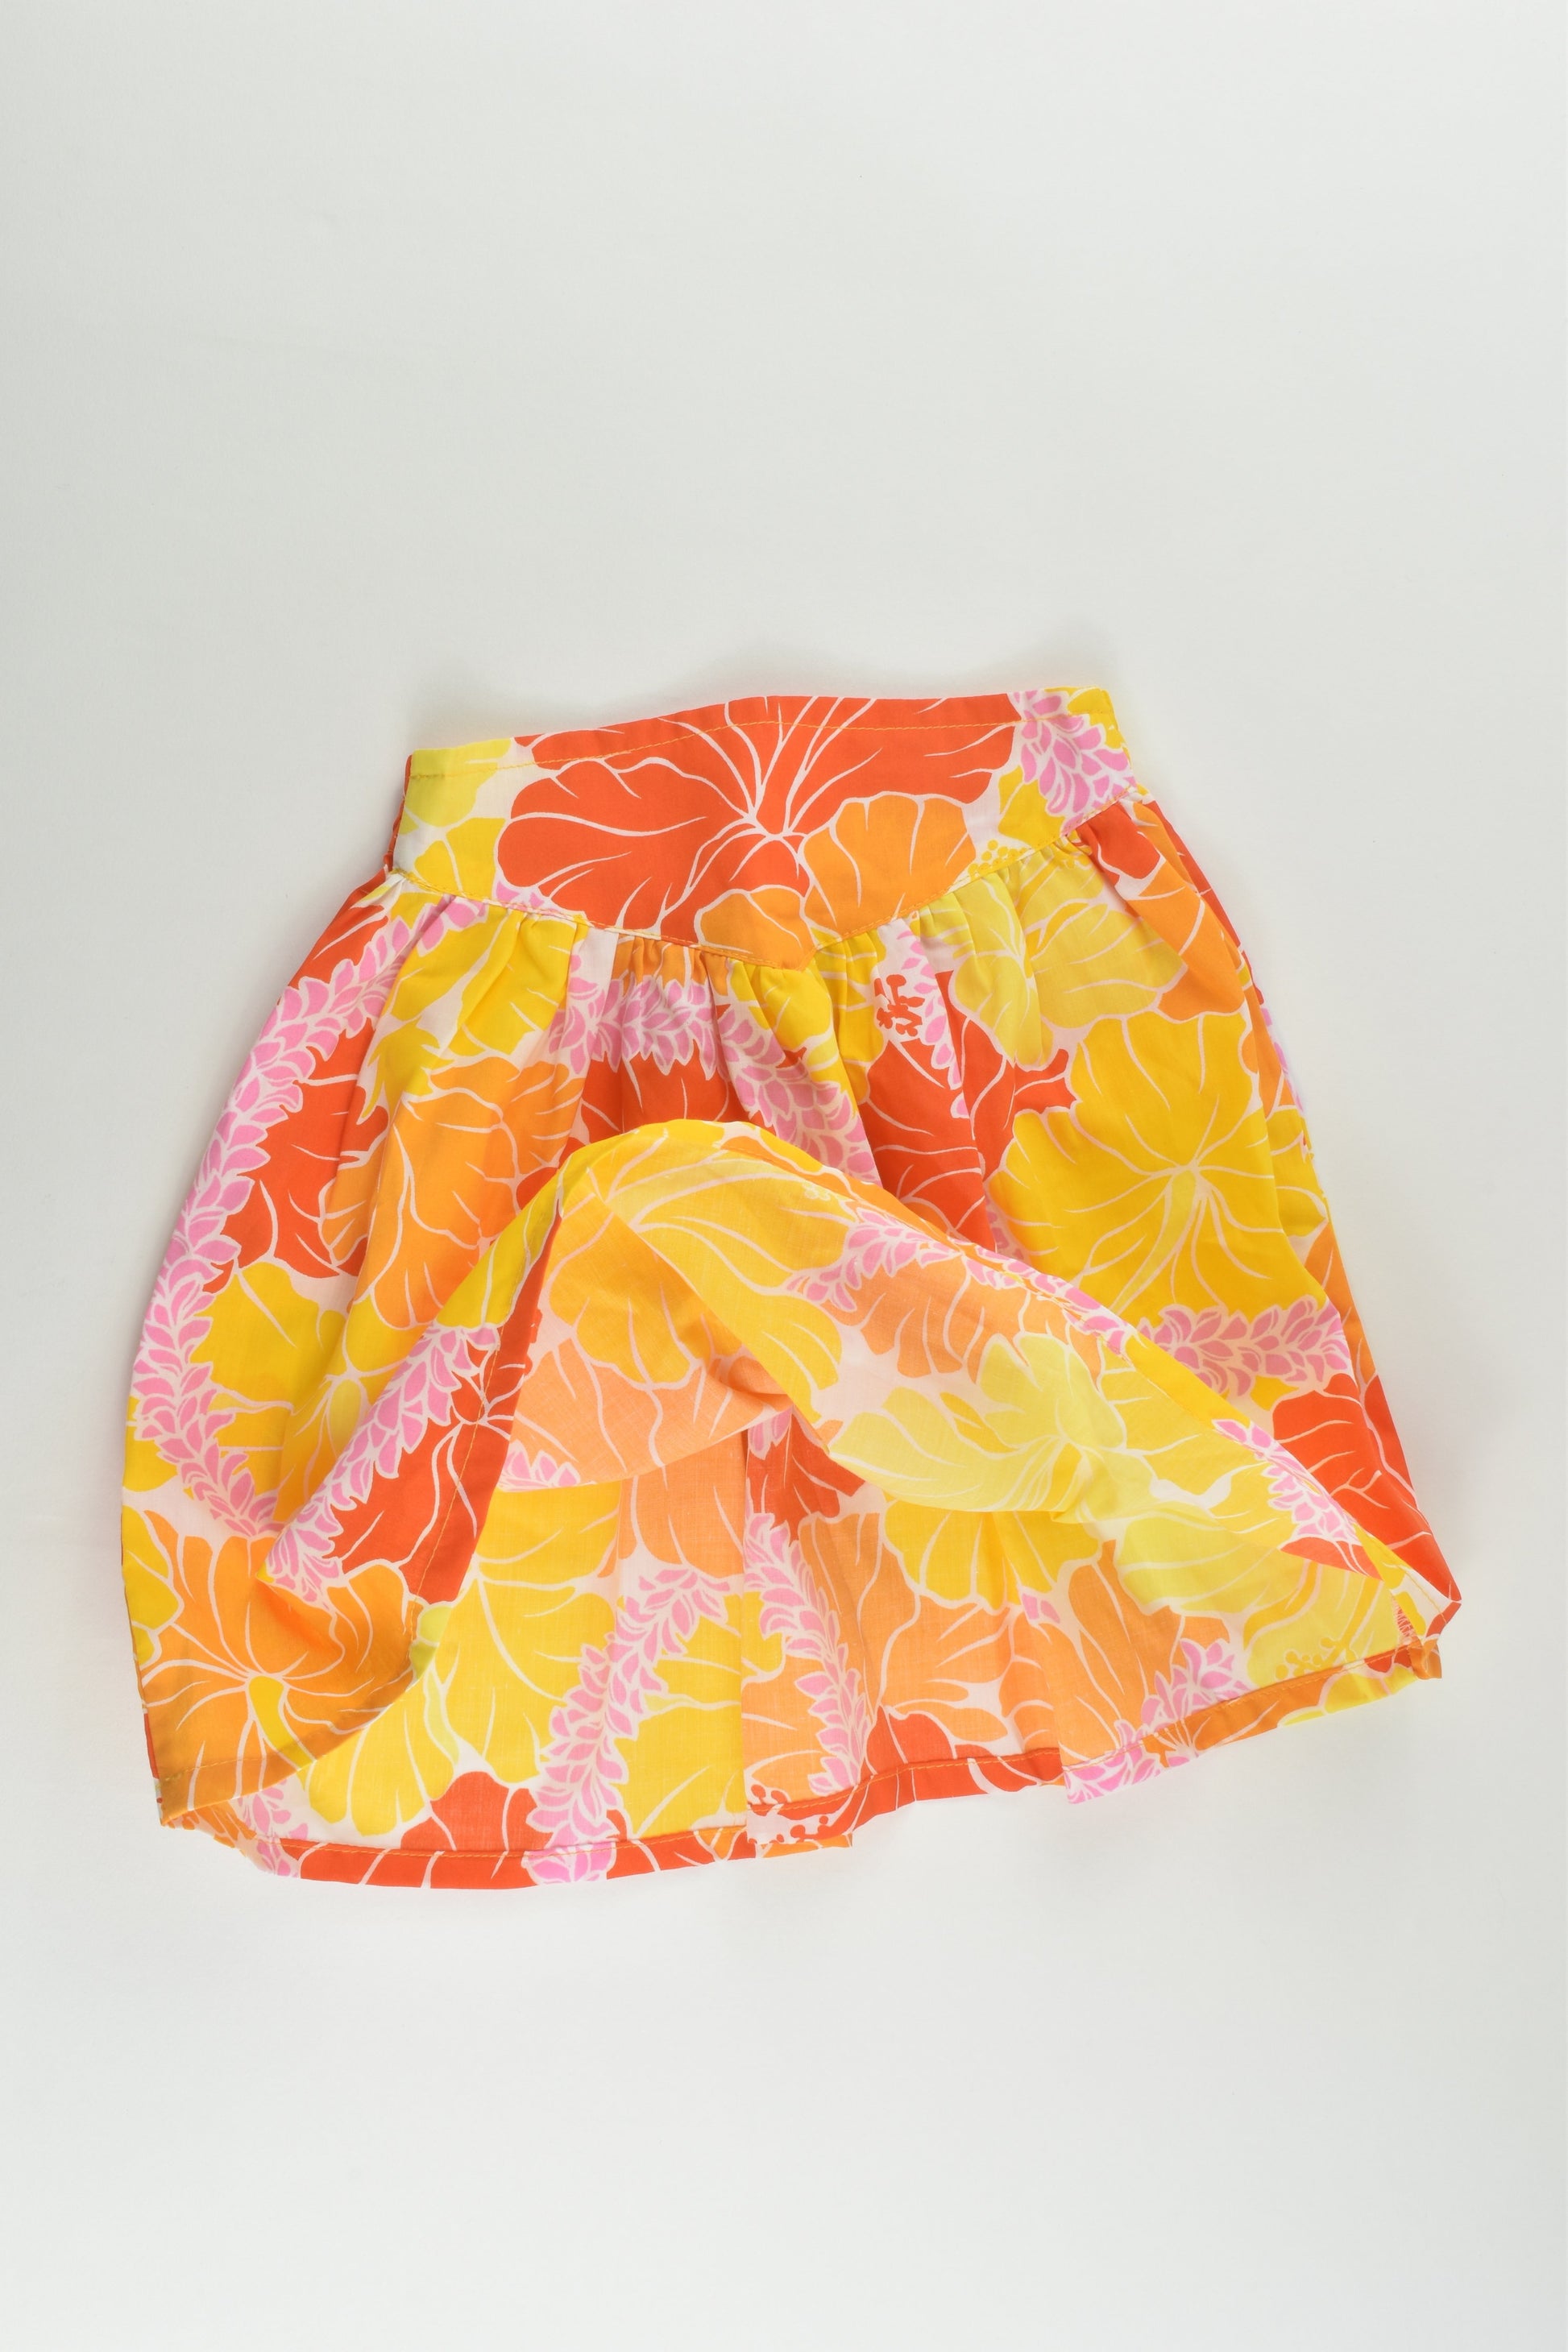 NEW Handmade Size 2 Skirt